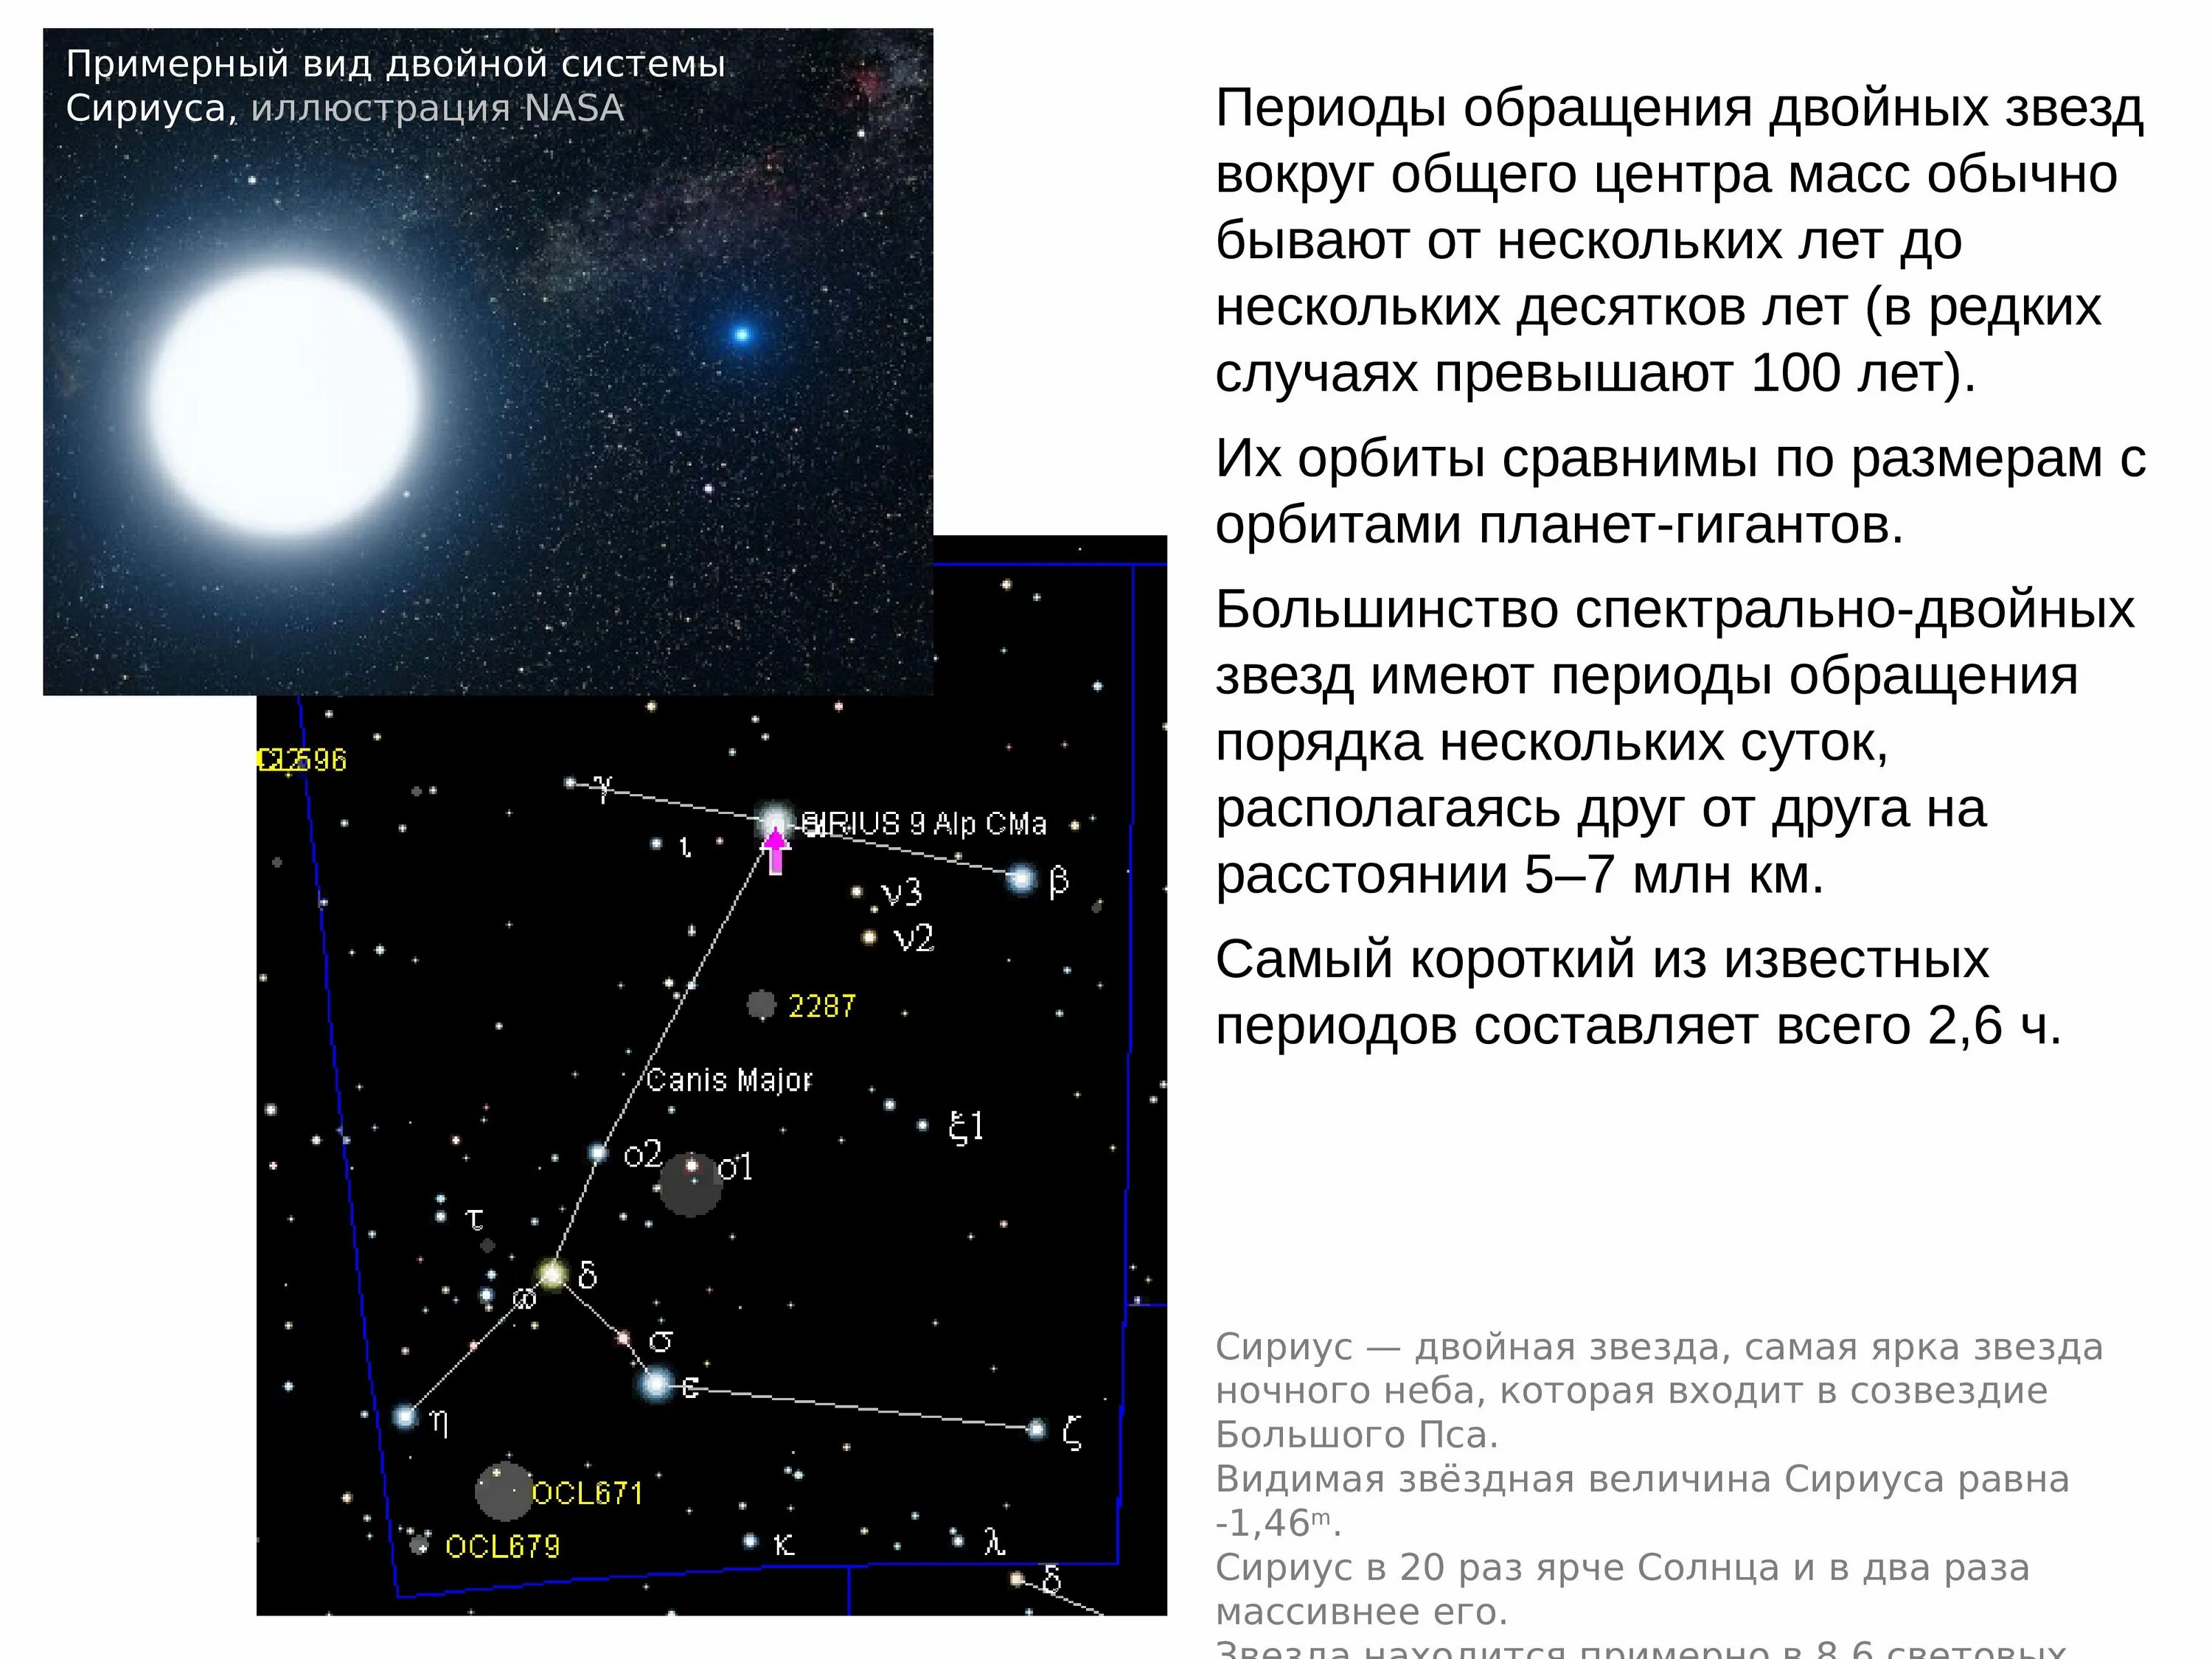 Какая звездная величина яркая. Видимая Звездная величина Сириуса. Период обращения двойной звезды. Звездная велична Сириуса. Видимая Звёздная величина Сириуса равна.